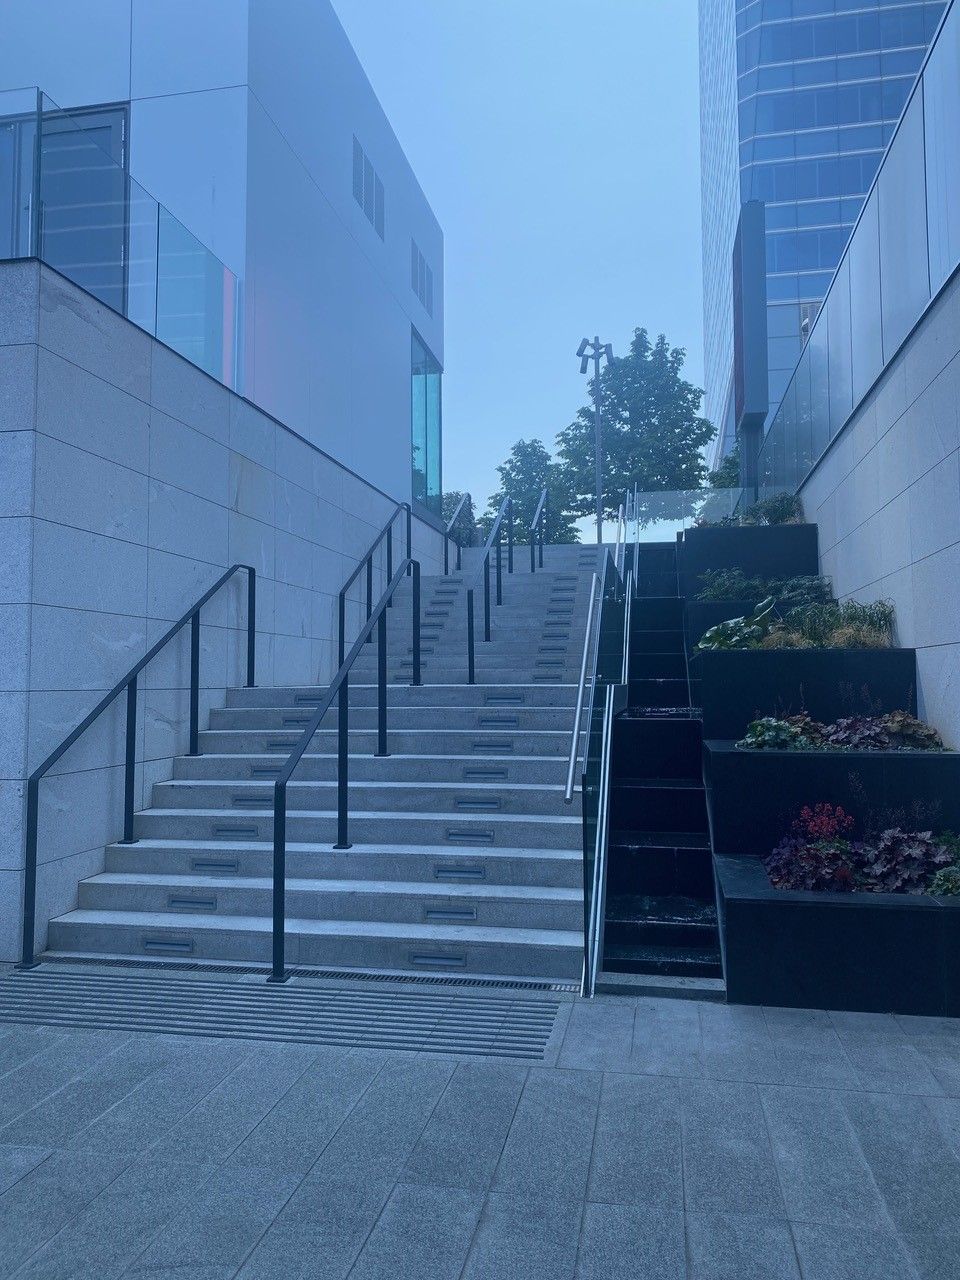 Un conjunto de escaleras que conducen a un edificio.